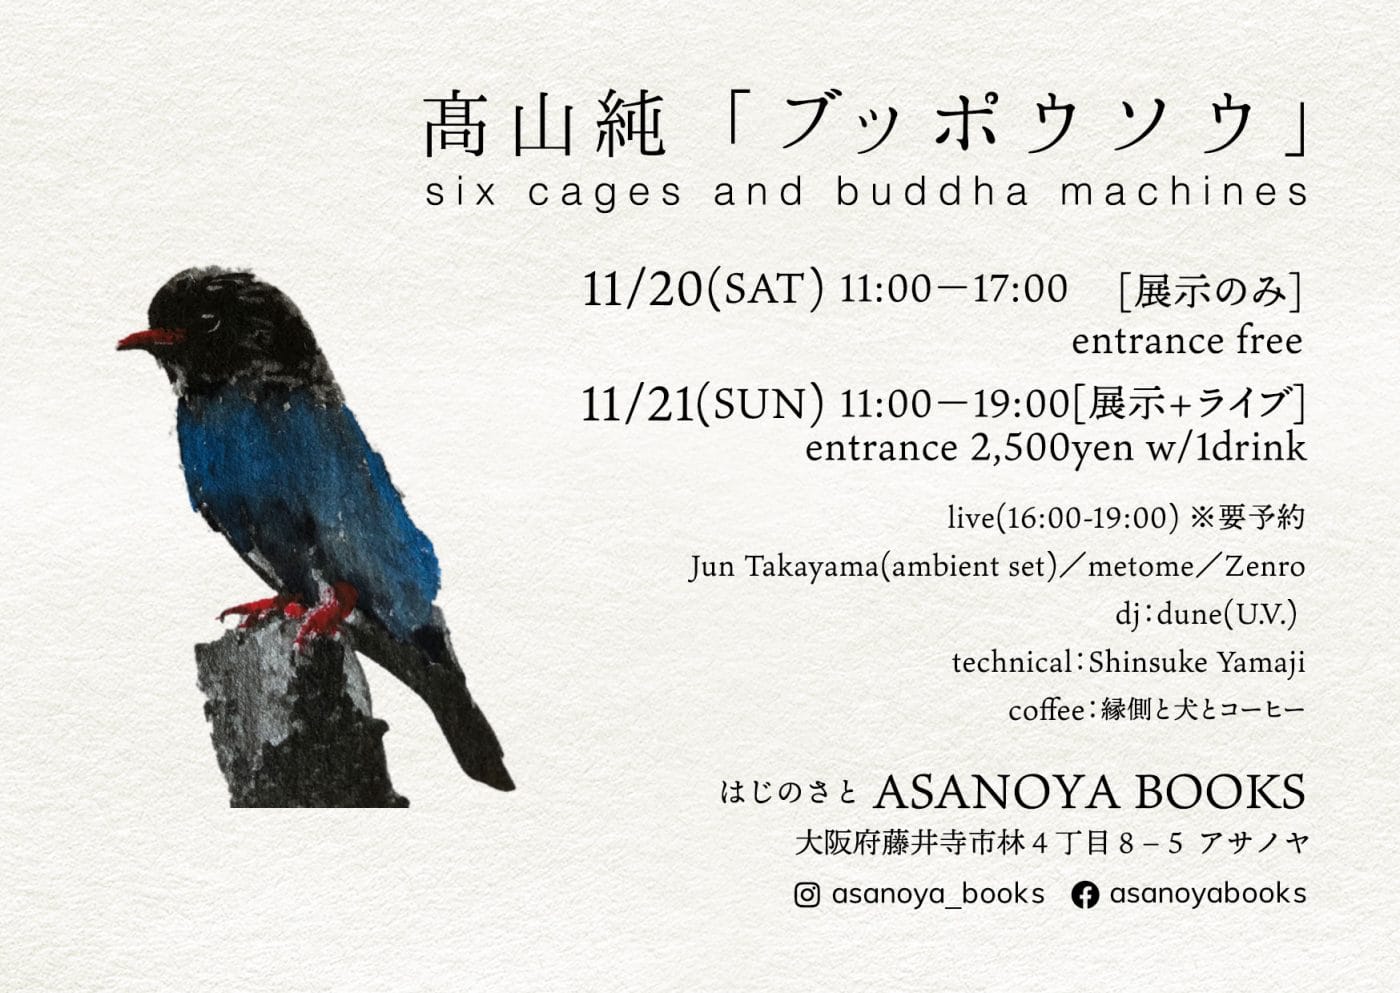 アサノヤブックスにて、髙山純「ブッポウソウ」。鳥籠を使った空間演出・インスタレーションとアンビエントライブ。